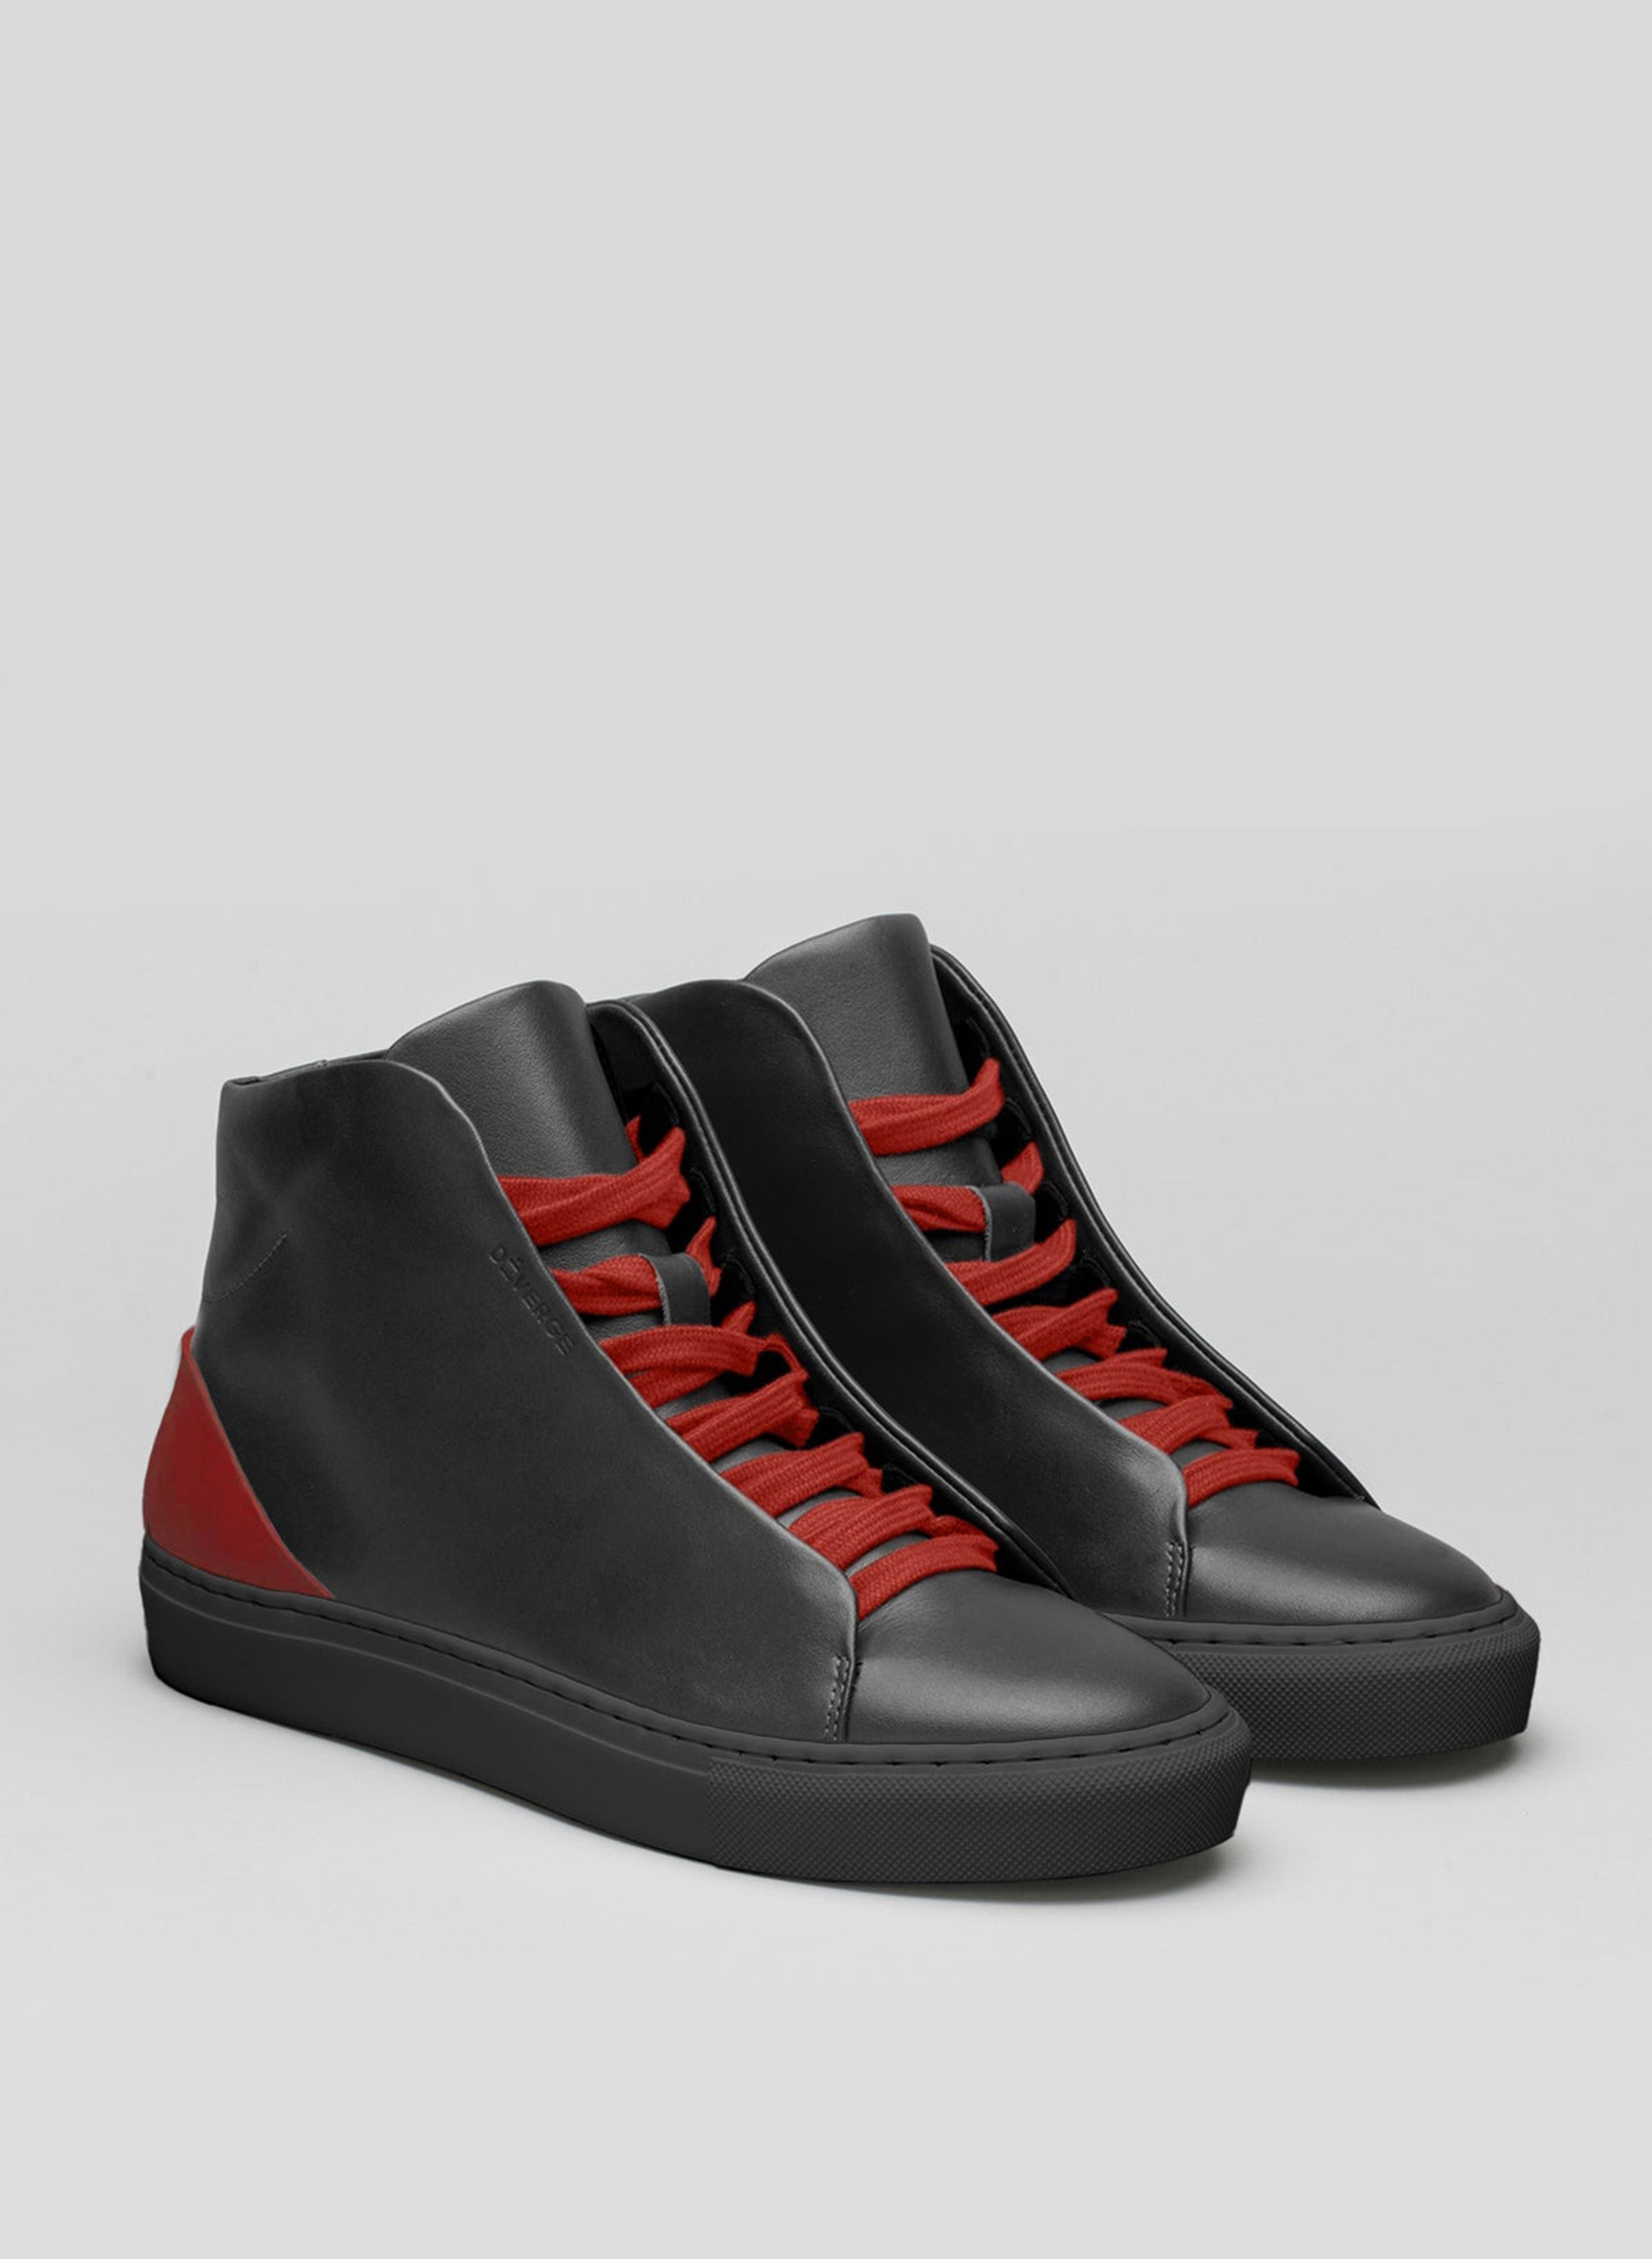 Ein Paar schwarze High-Top-Schuhe sneakers mit roten Schnürsenkeln, die von Diverge präsentiert werden.